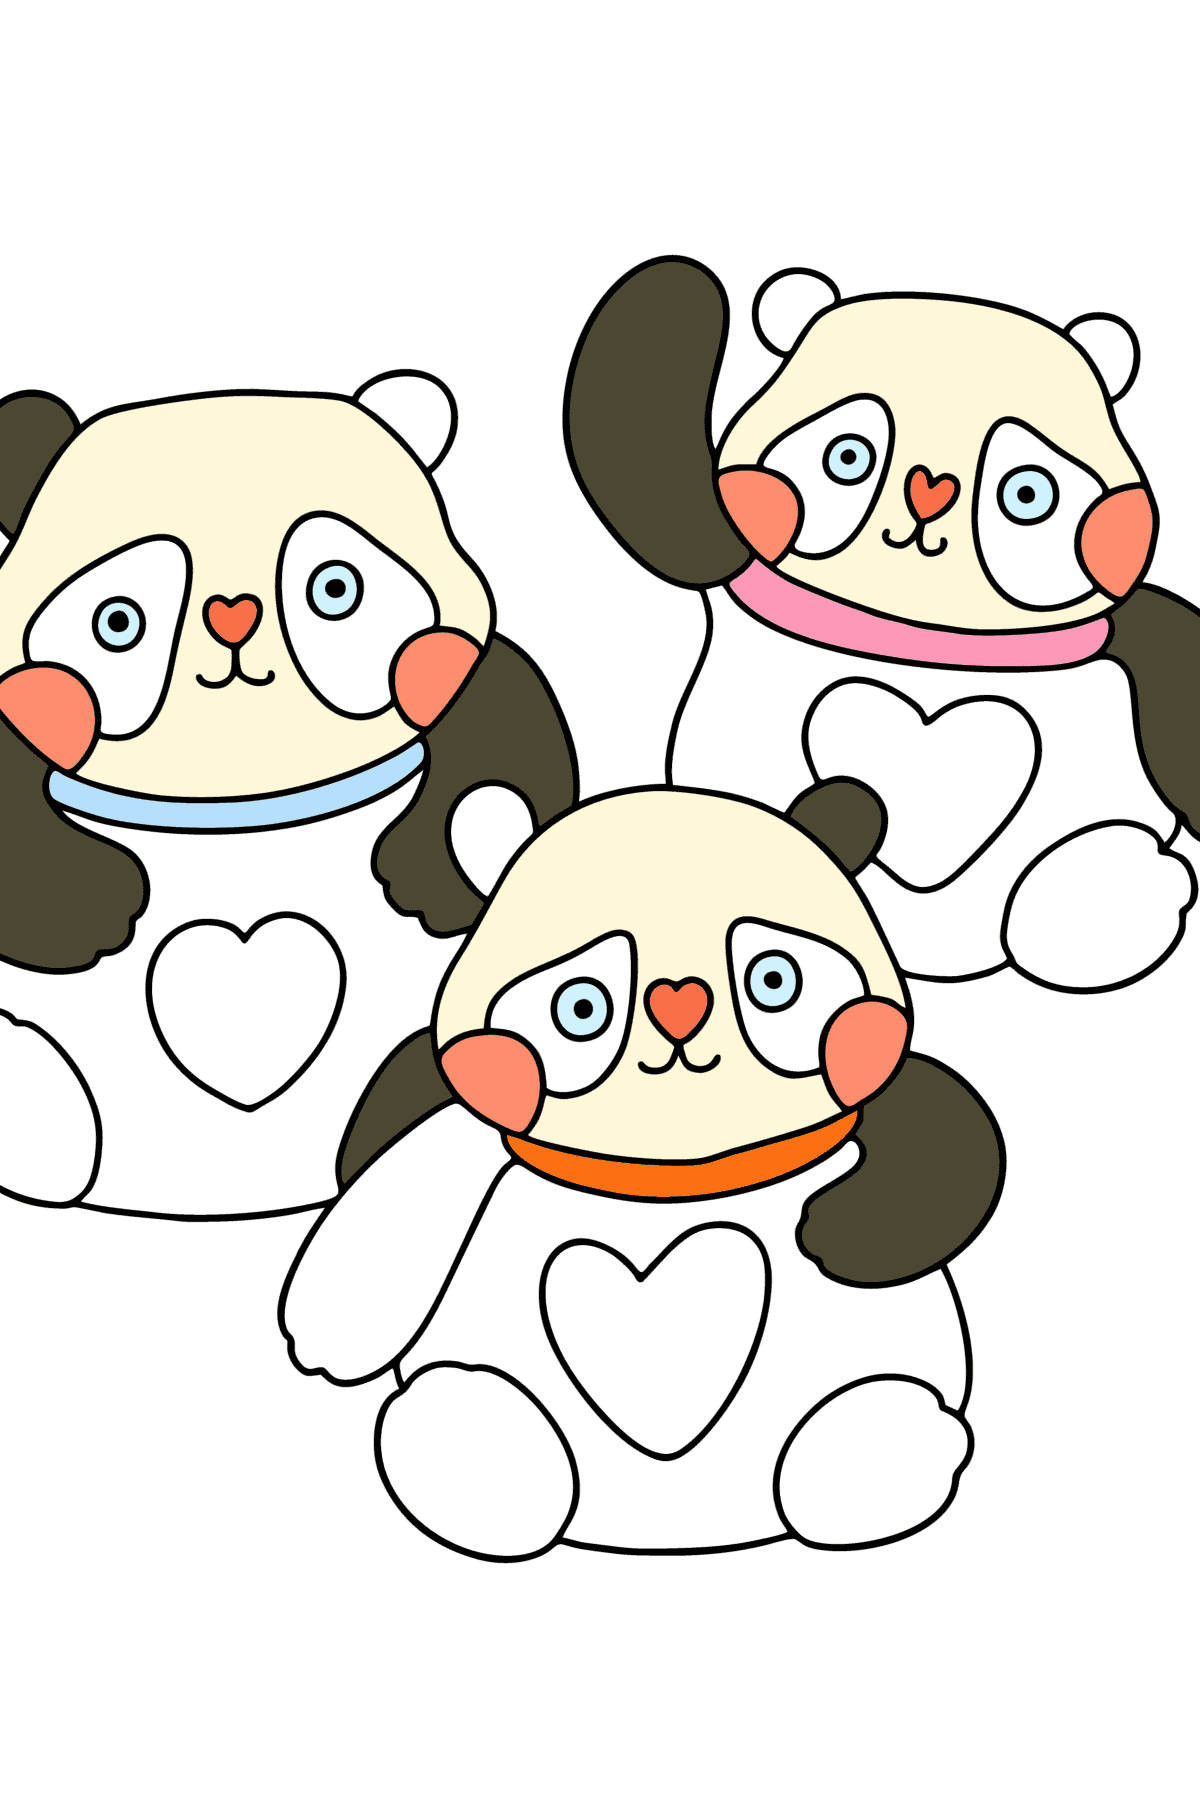 Tegning til fargelegging kawaii pandaer - Tegninger til fargelegging for barn